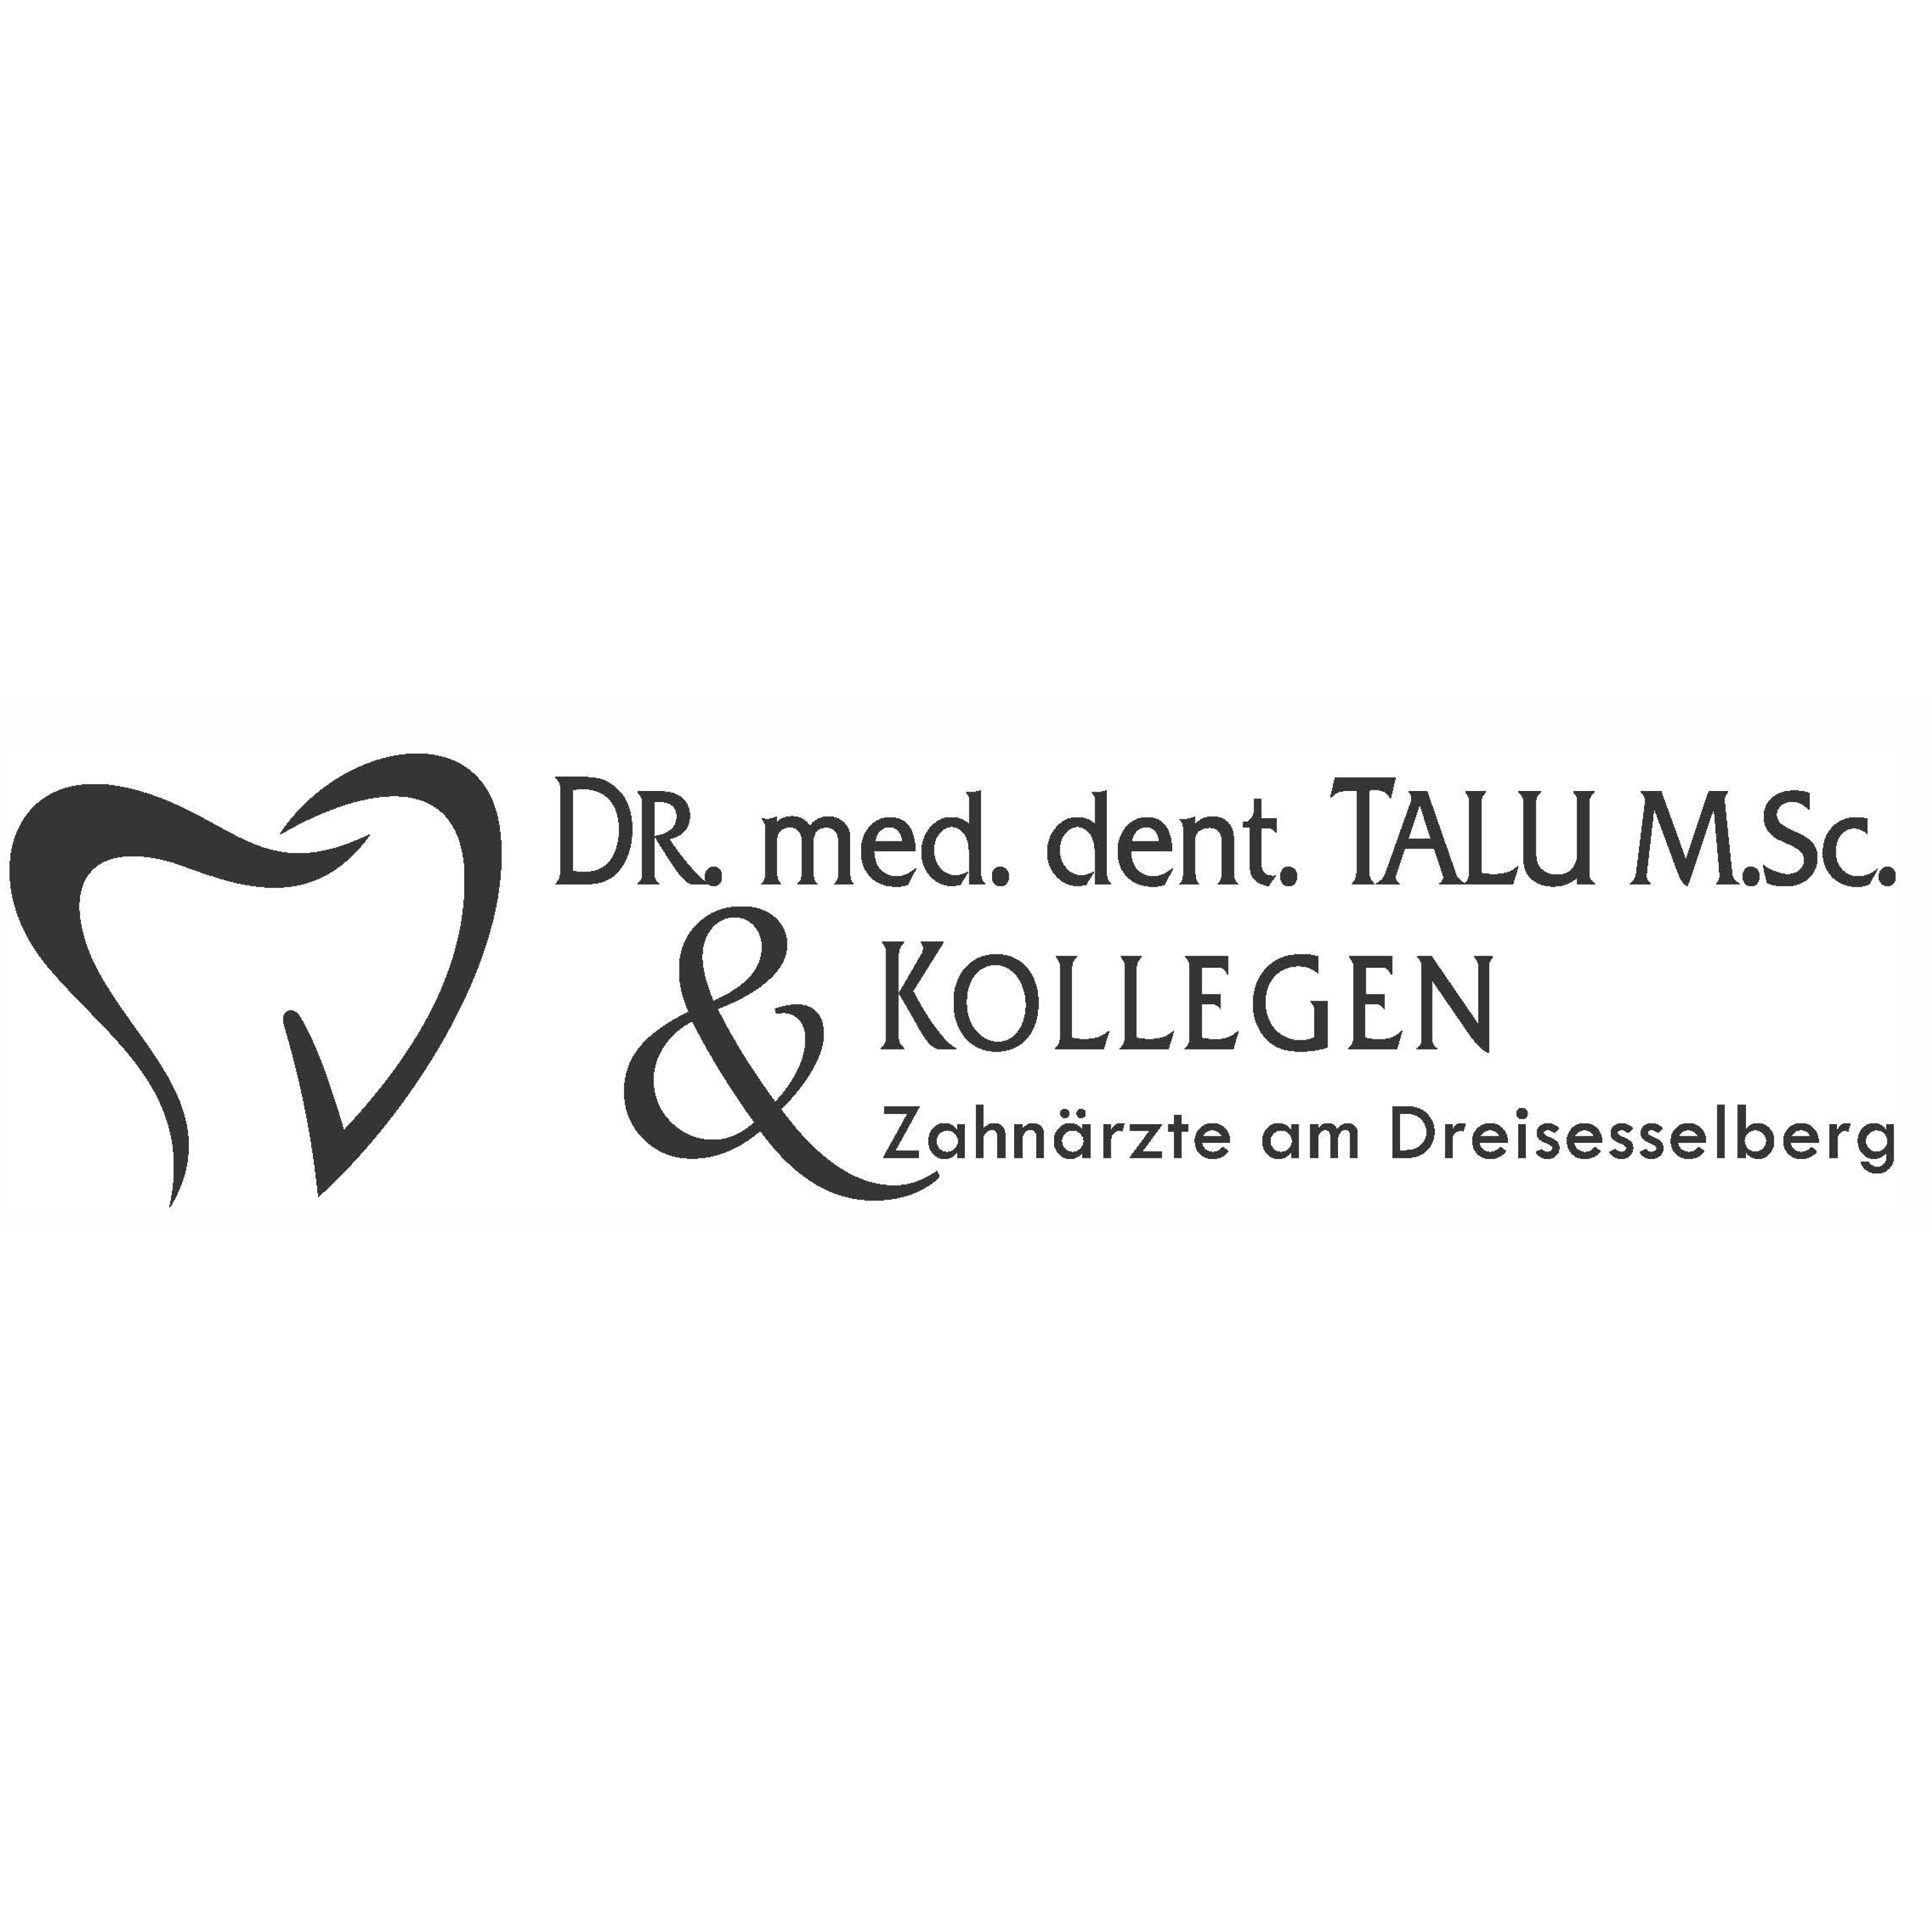 Dr. med. dent. Talu M.Sc. & Kollegen Zahnärzte am Dreisesselberg in Neureichenau - Logo